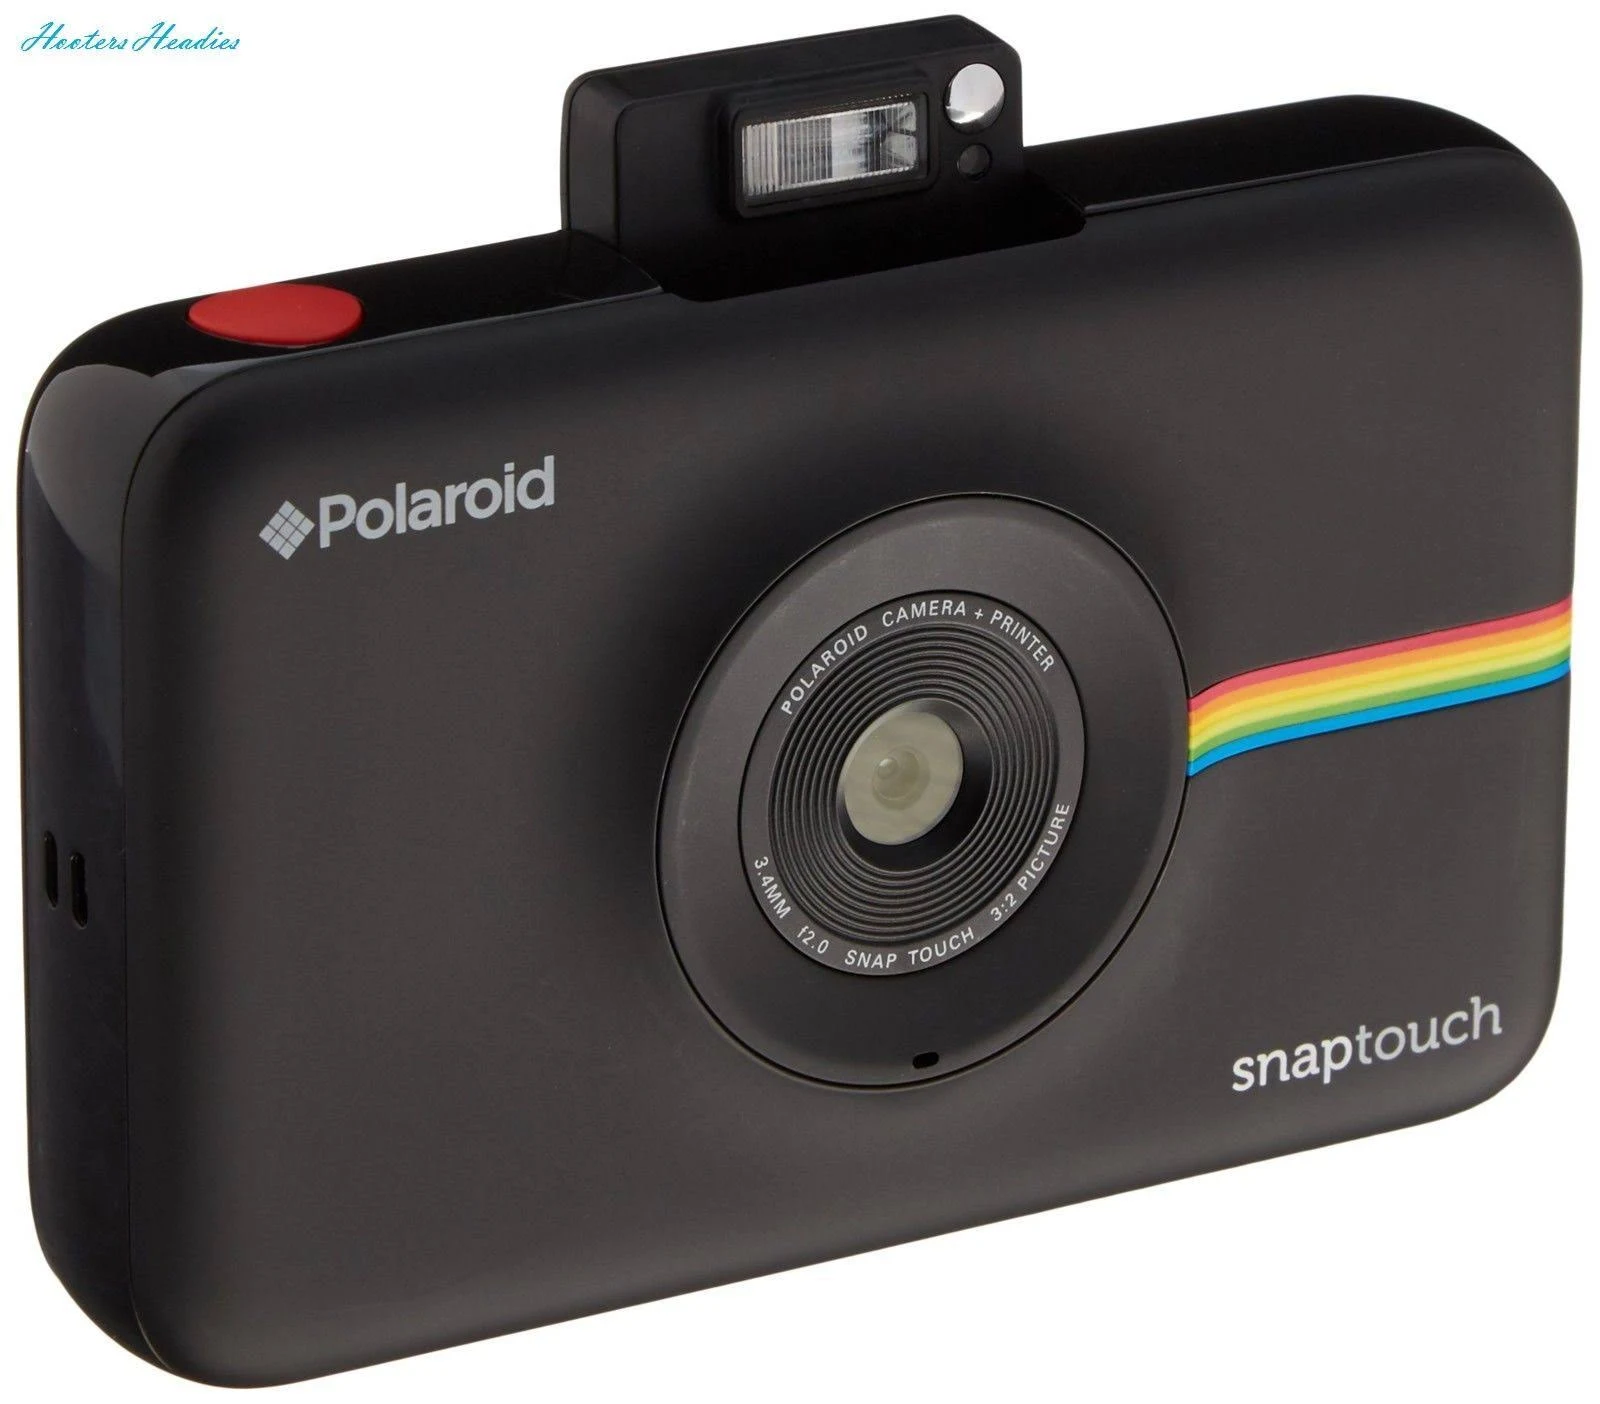 Polaroid Cámara digital de impresión instantánea Snap Touch con pantalla LCD (negro) con tecnología de impresión Zink Zero Ink